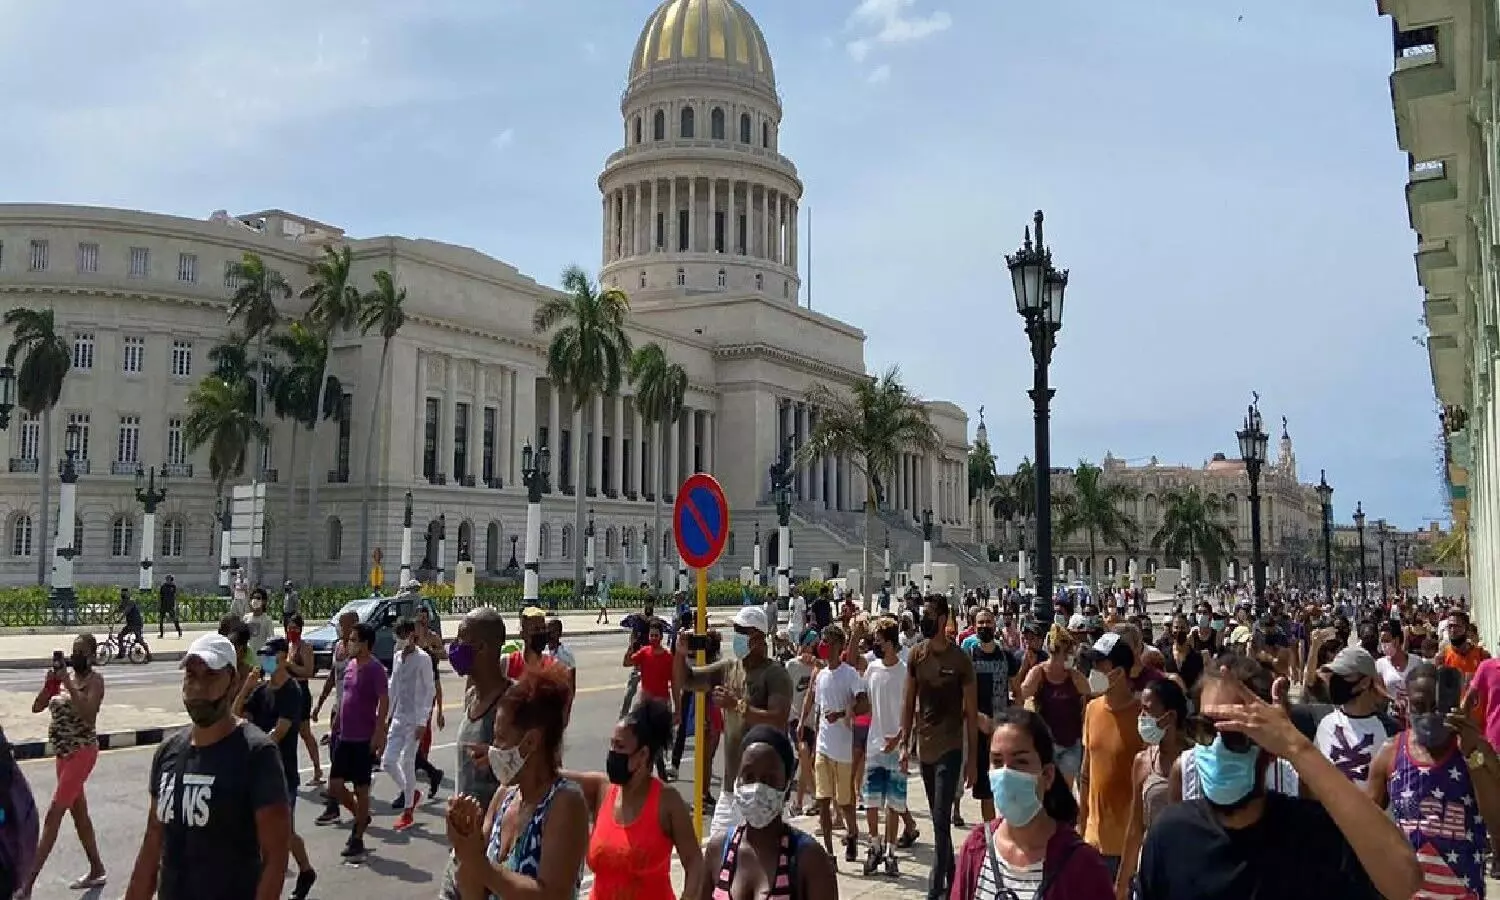 Cuba Revolution